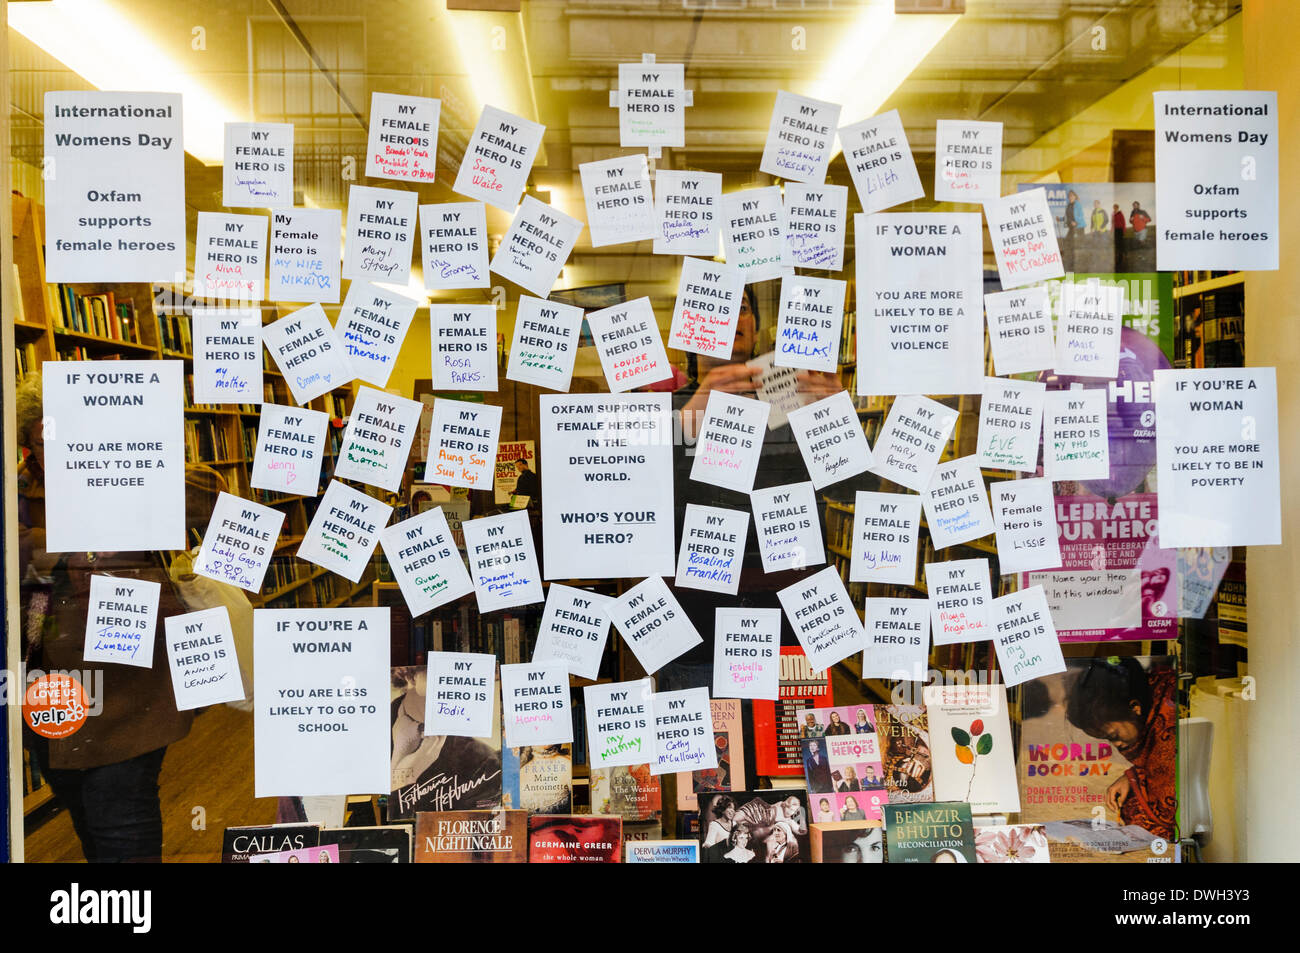 Belfast, Nordirland. 8. März 2014 - ein Buchladen-Fenster zeigt eine Reihe von Plakaten, wo Menschen ihren weiblichen Helden am internationalen Frauentag Tag Credit identifizieren: Stephen Barnes/Alamy Live News Stockfoto